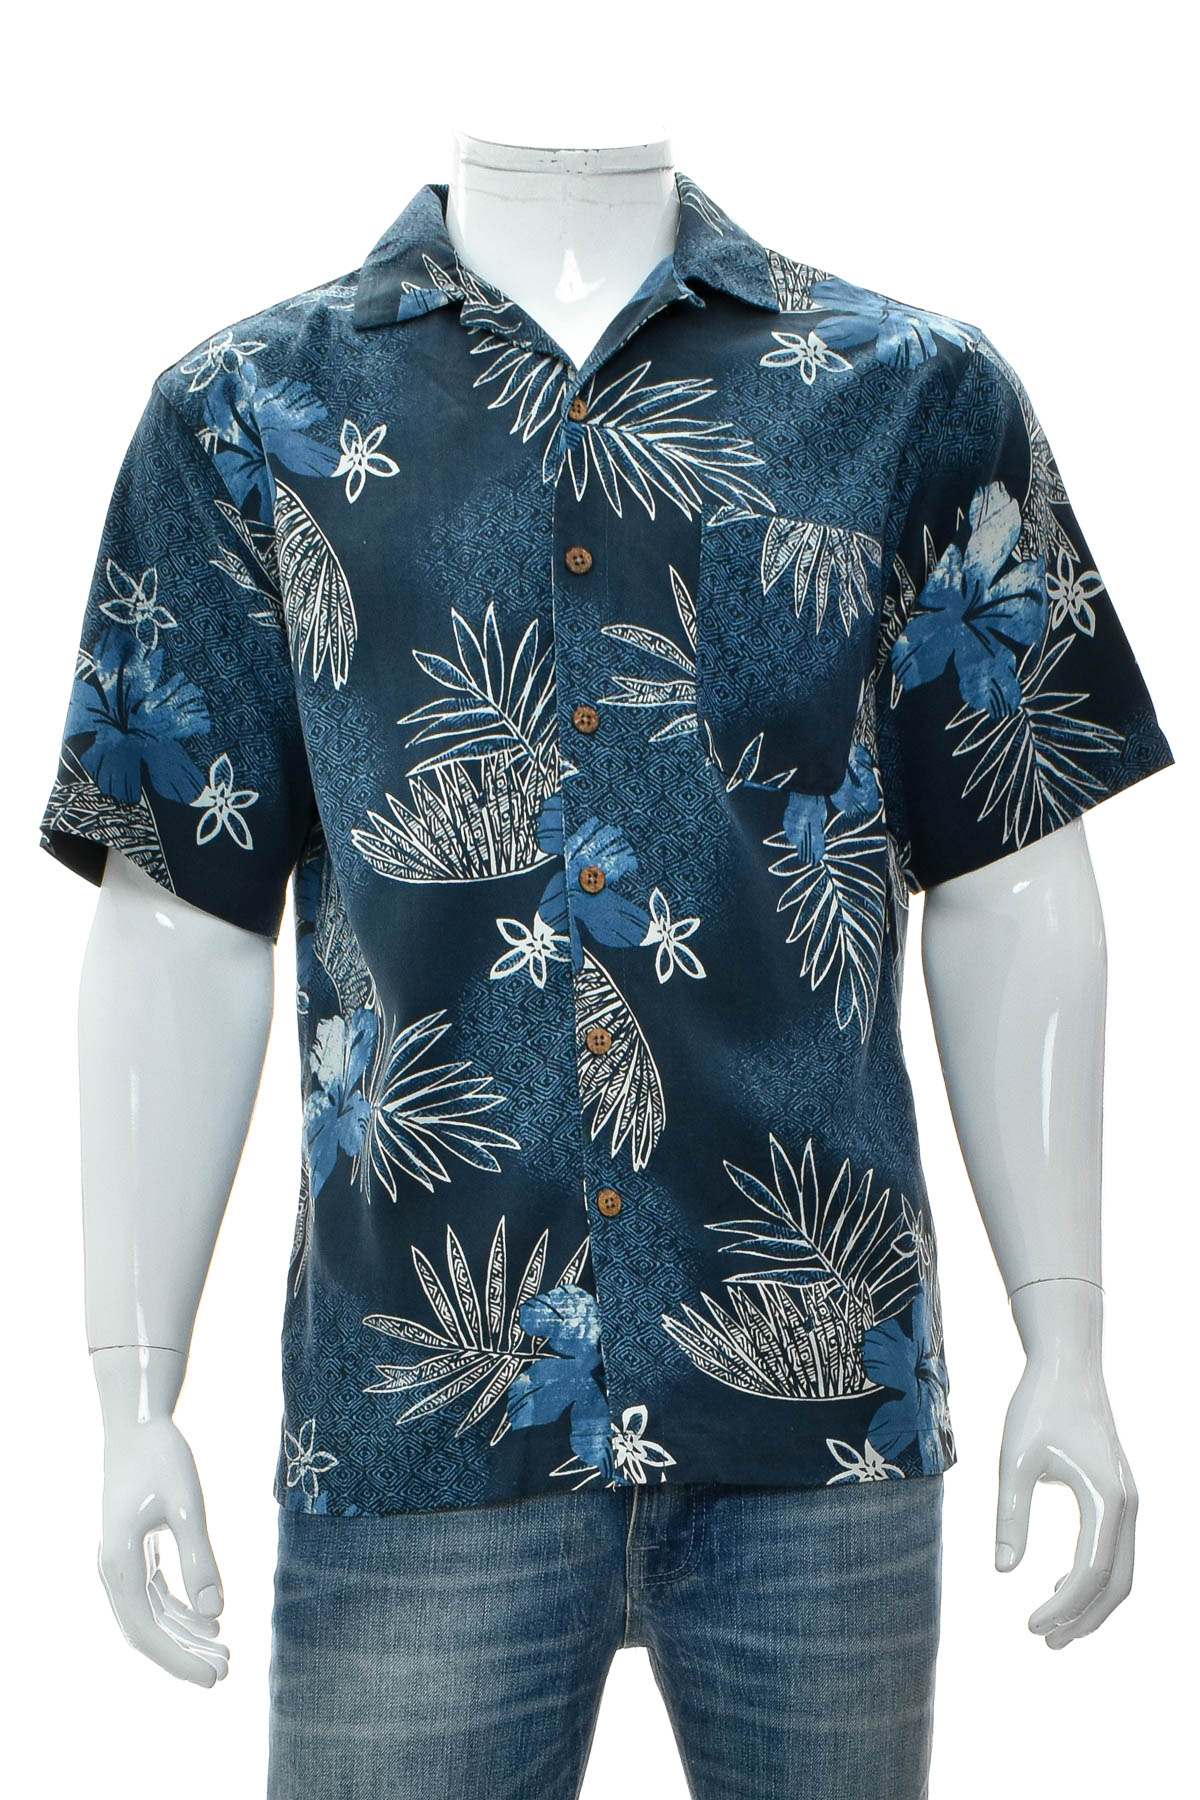 Ανδρικό πουκάμισο - Island Shores - 0